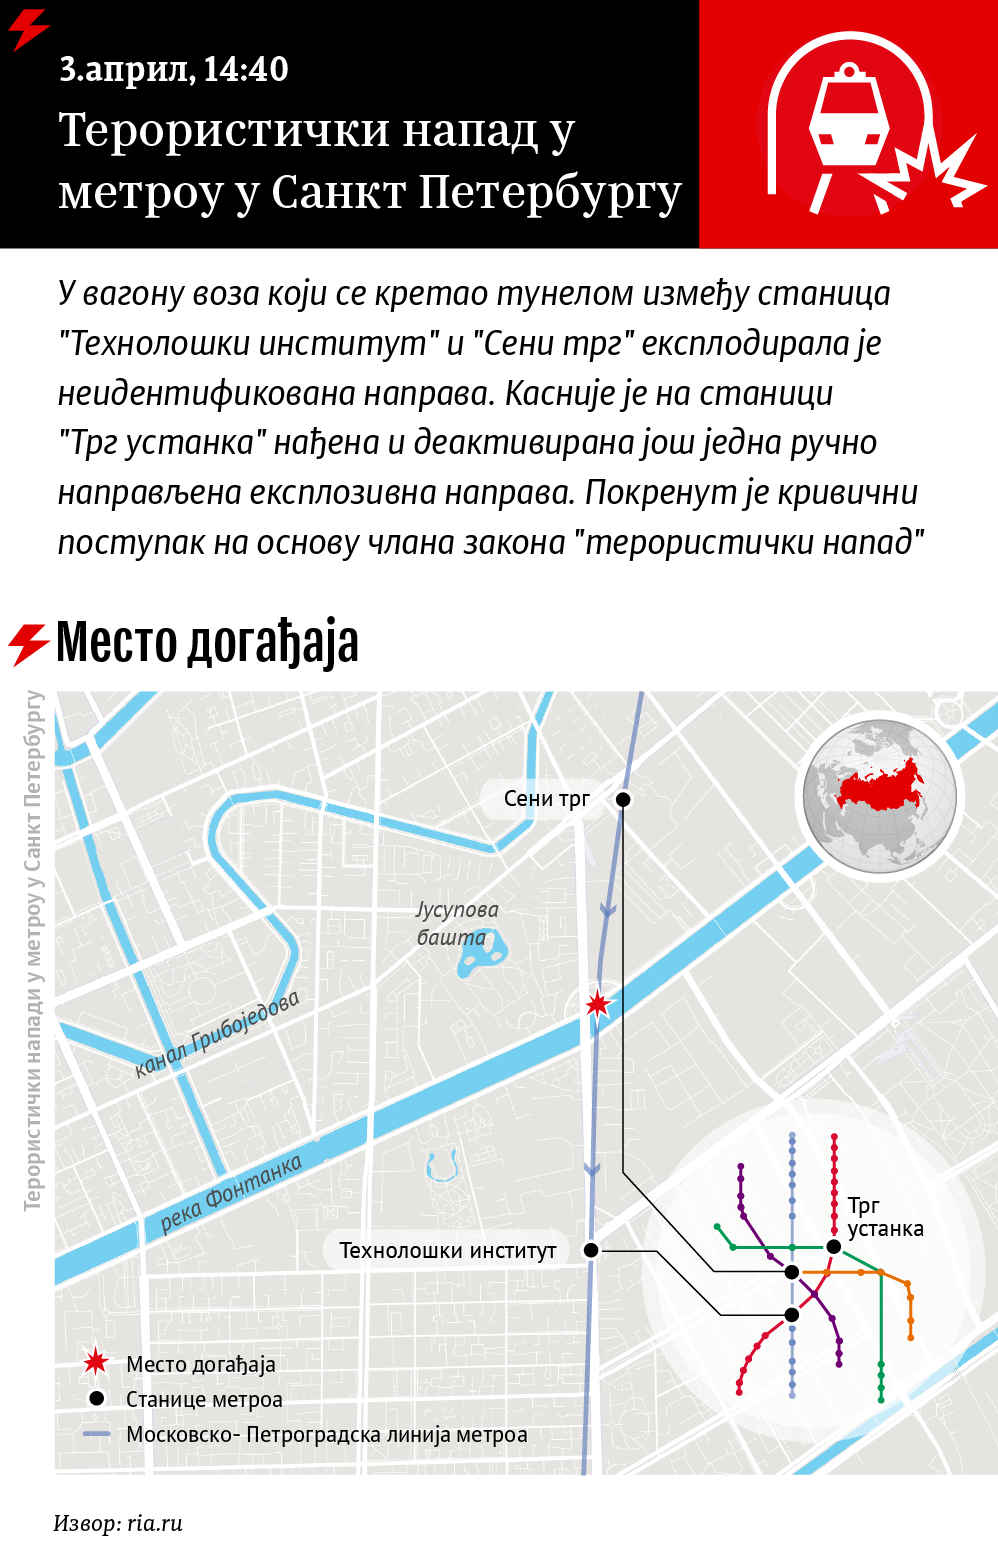 Терористички напади у метроу - Sputnik Србија